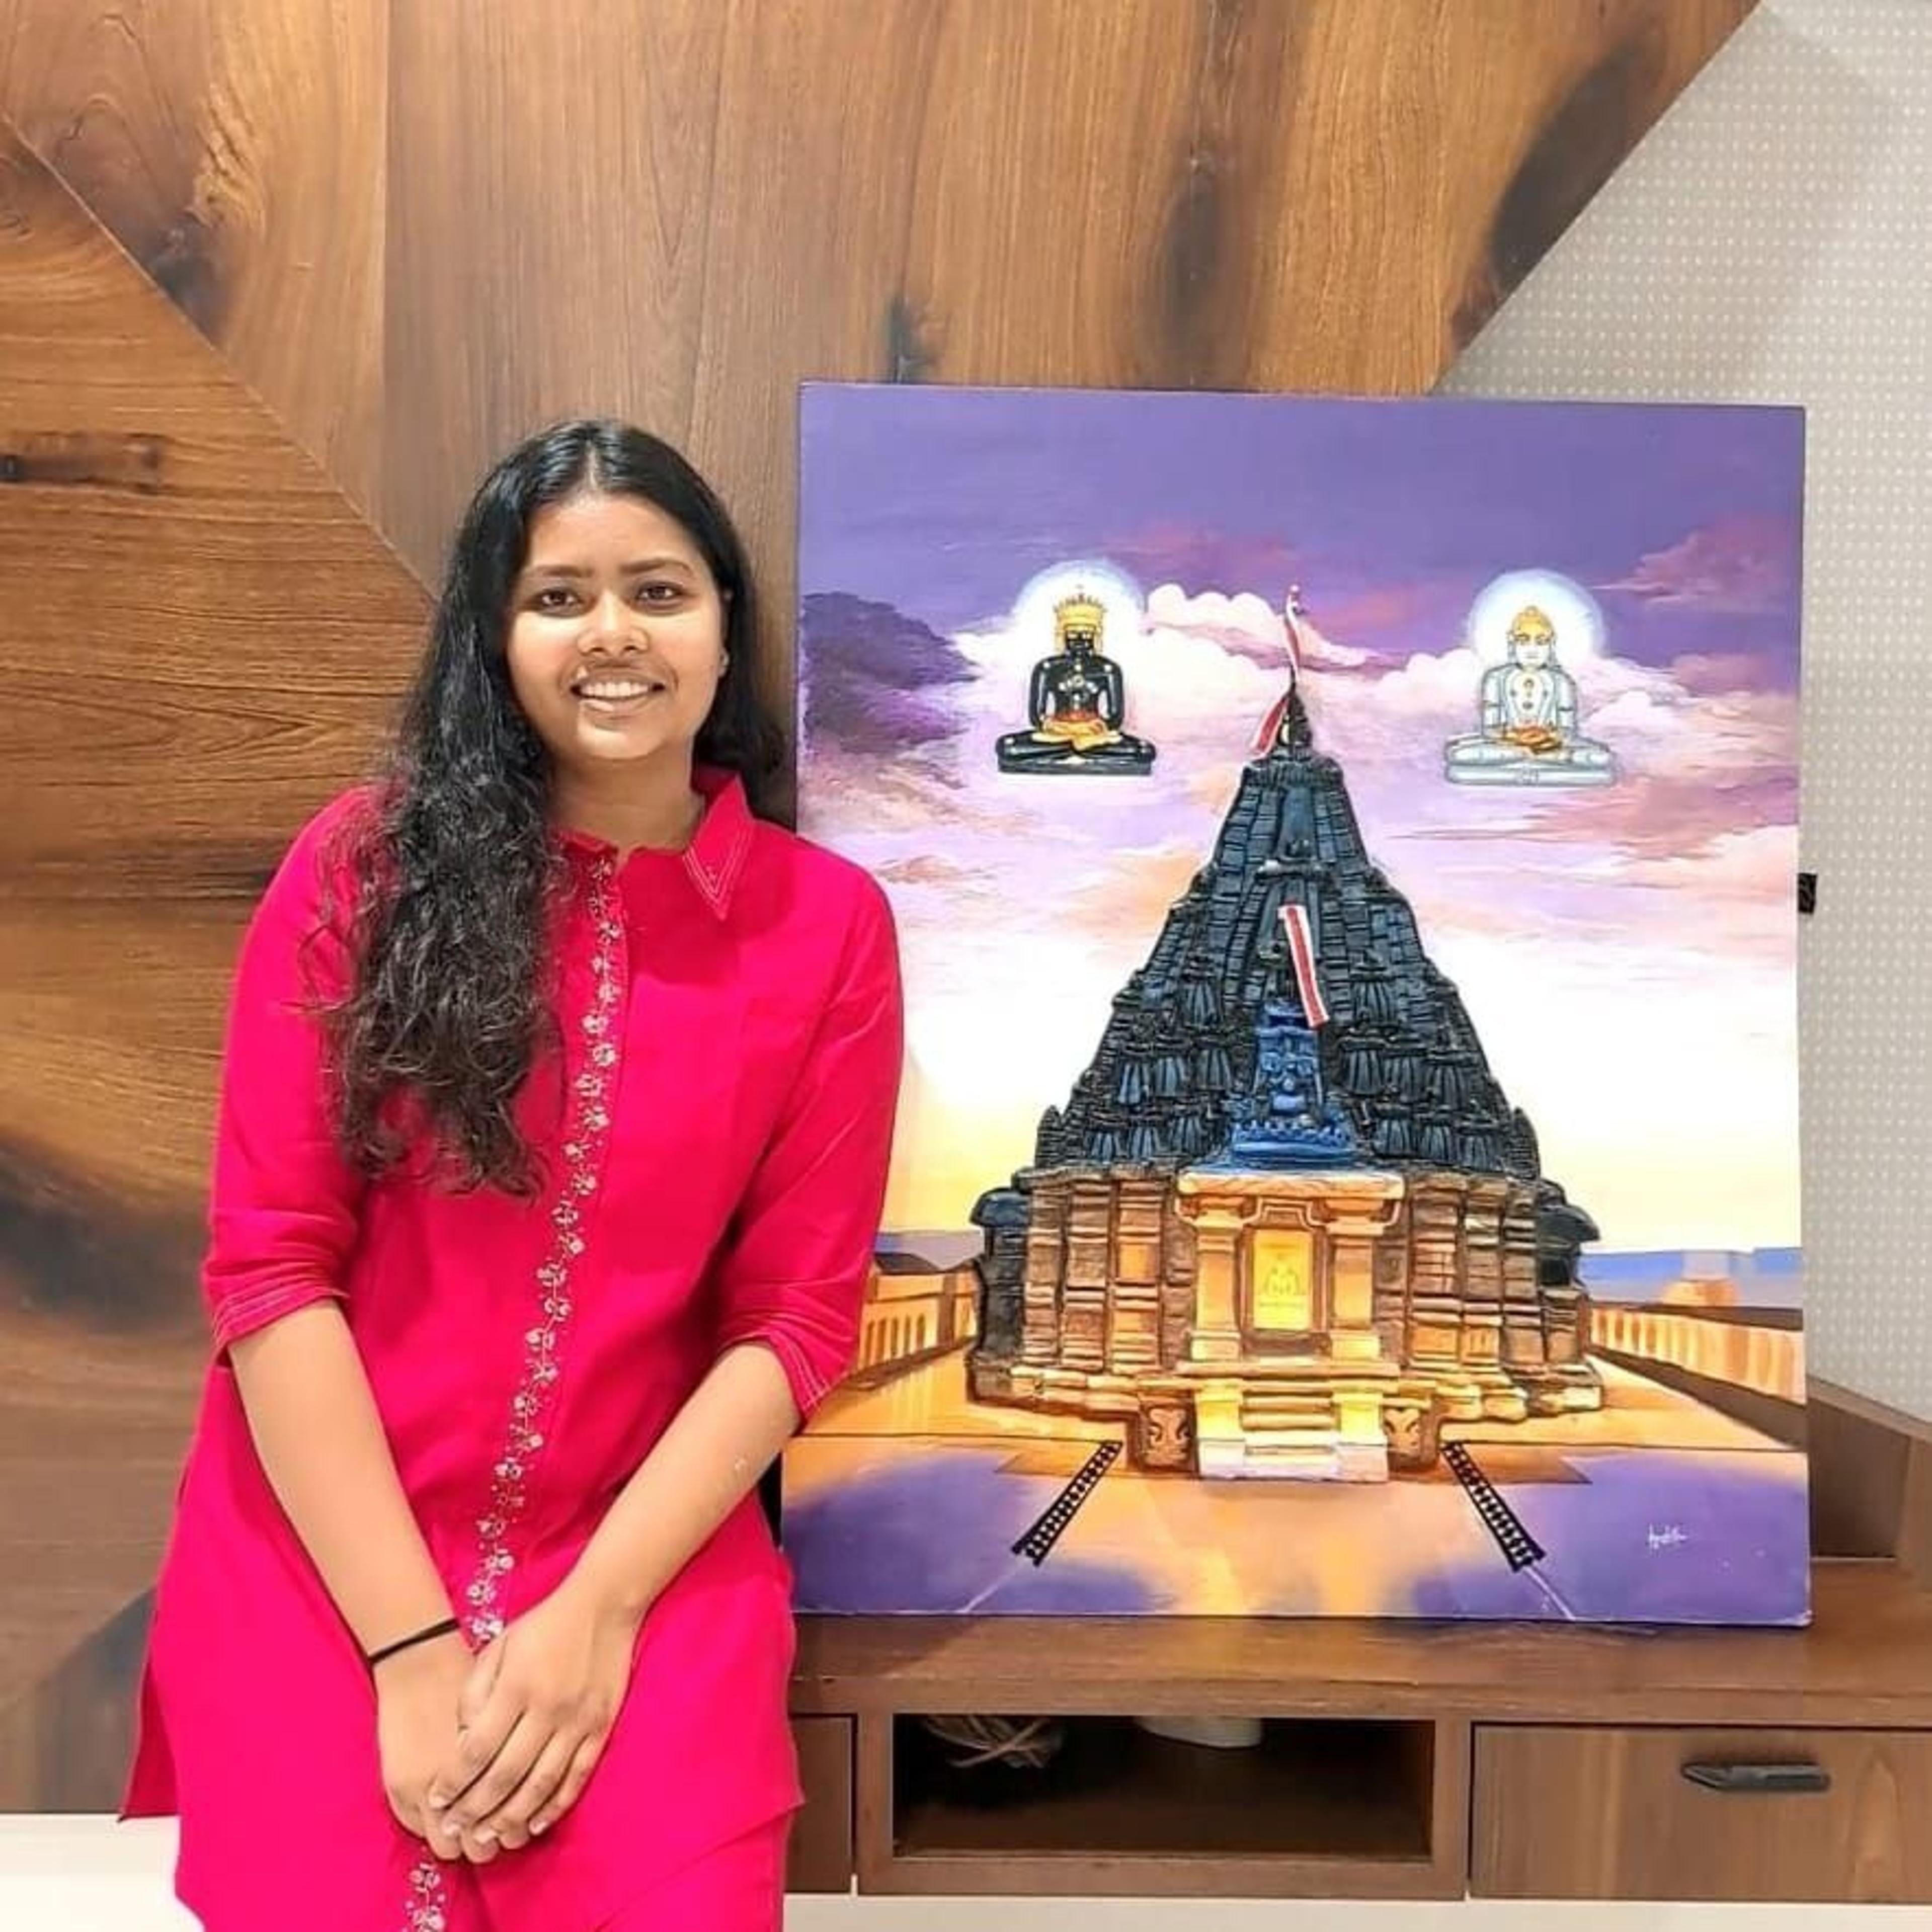 राजस्थान मूल की याशिका ने दो महीने में तैयार की गिरनार तीर्थ की बेहतरीन पेंटिंग,
नई तकनीक से उभारी सुन्दरता